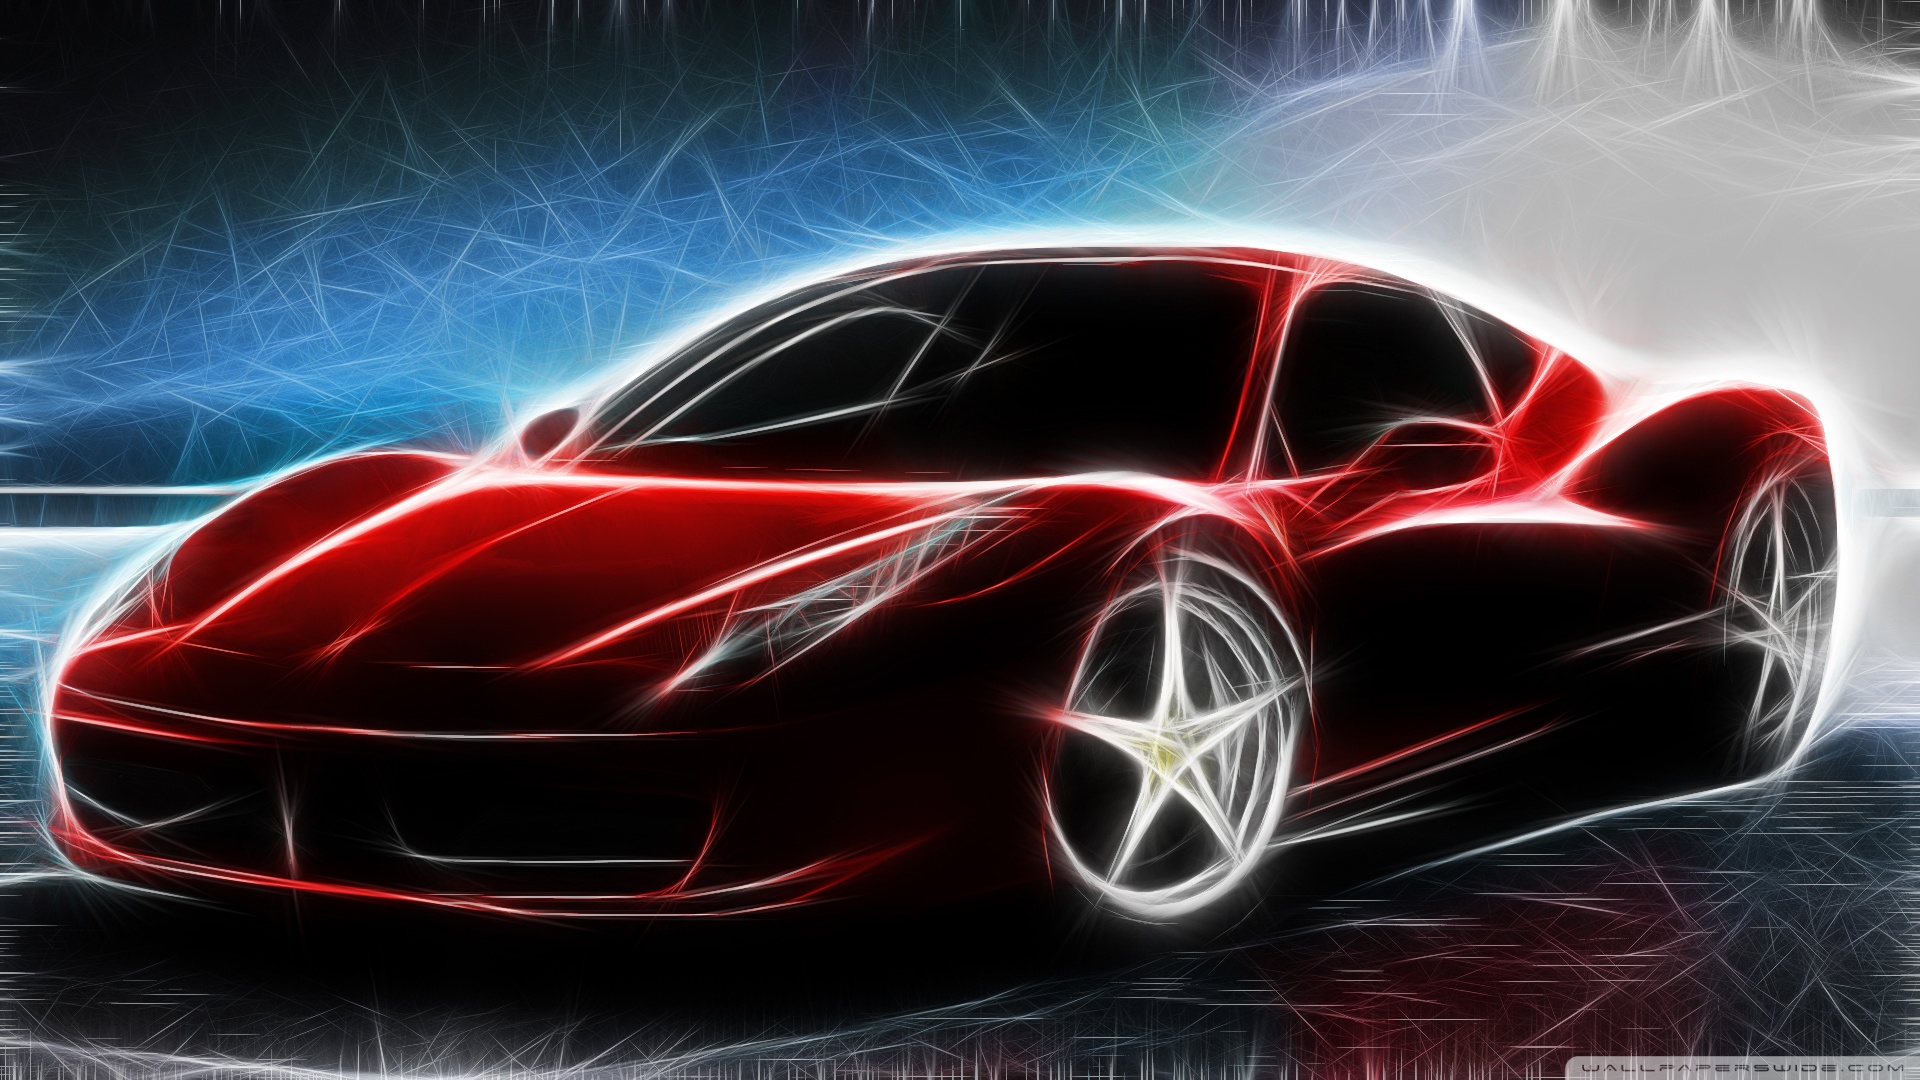 La colección más genial de fondos de pantalla y fondos Ferrari en HD